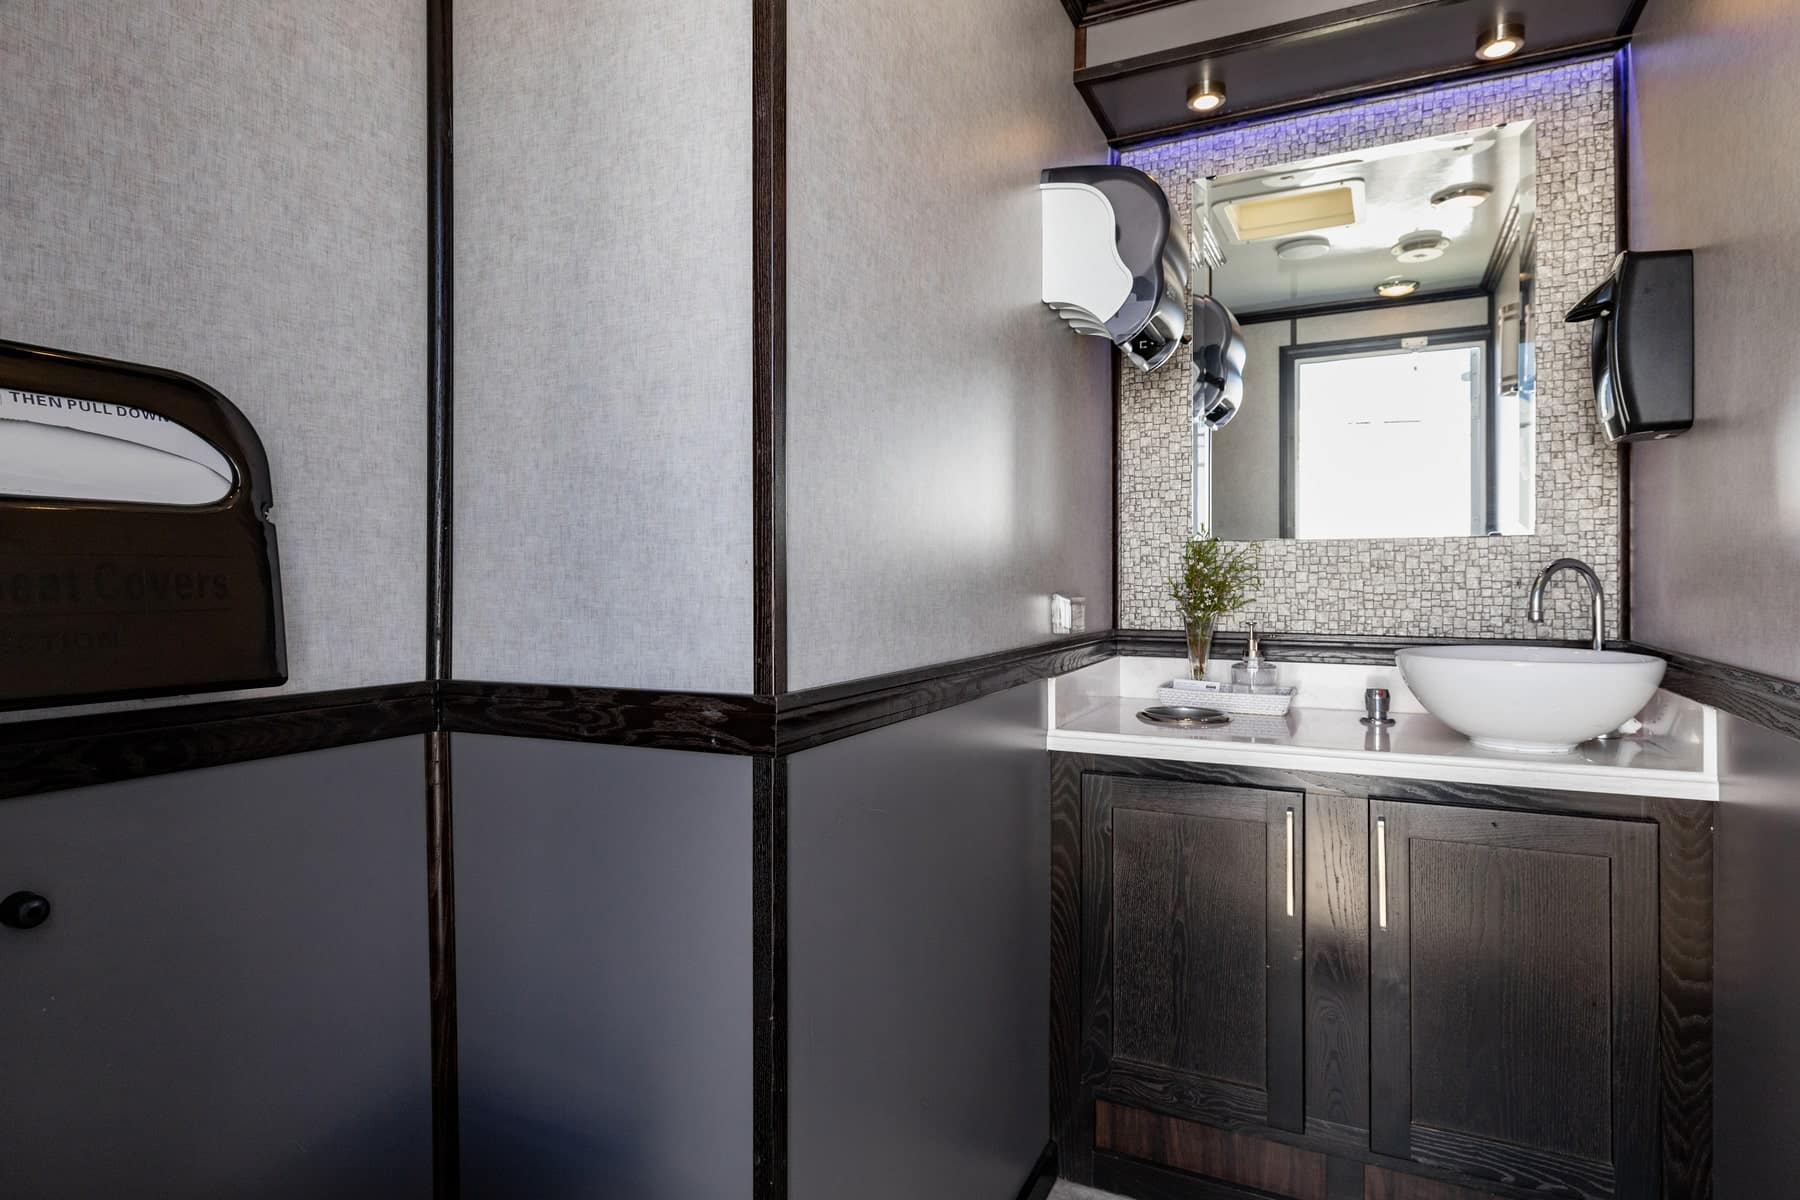 3-Station Luxury Restroom Trailer Rental – Interior View 6